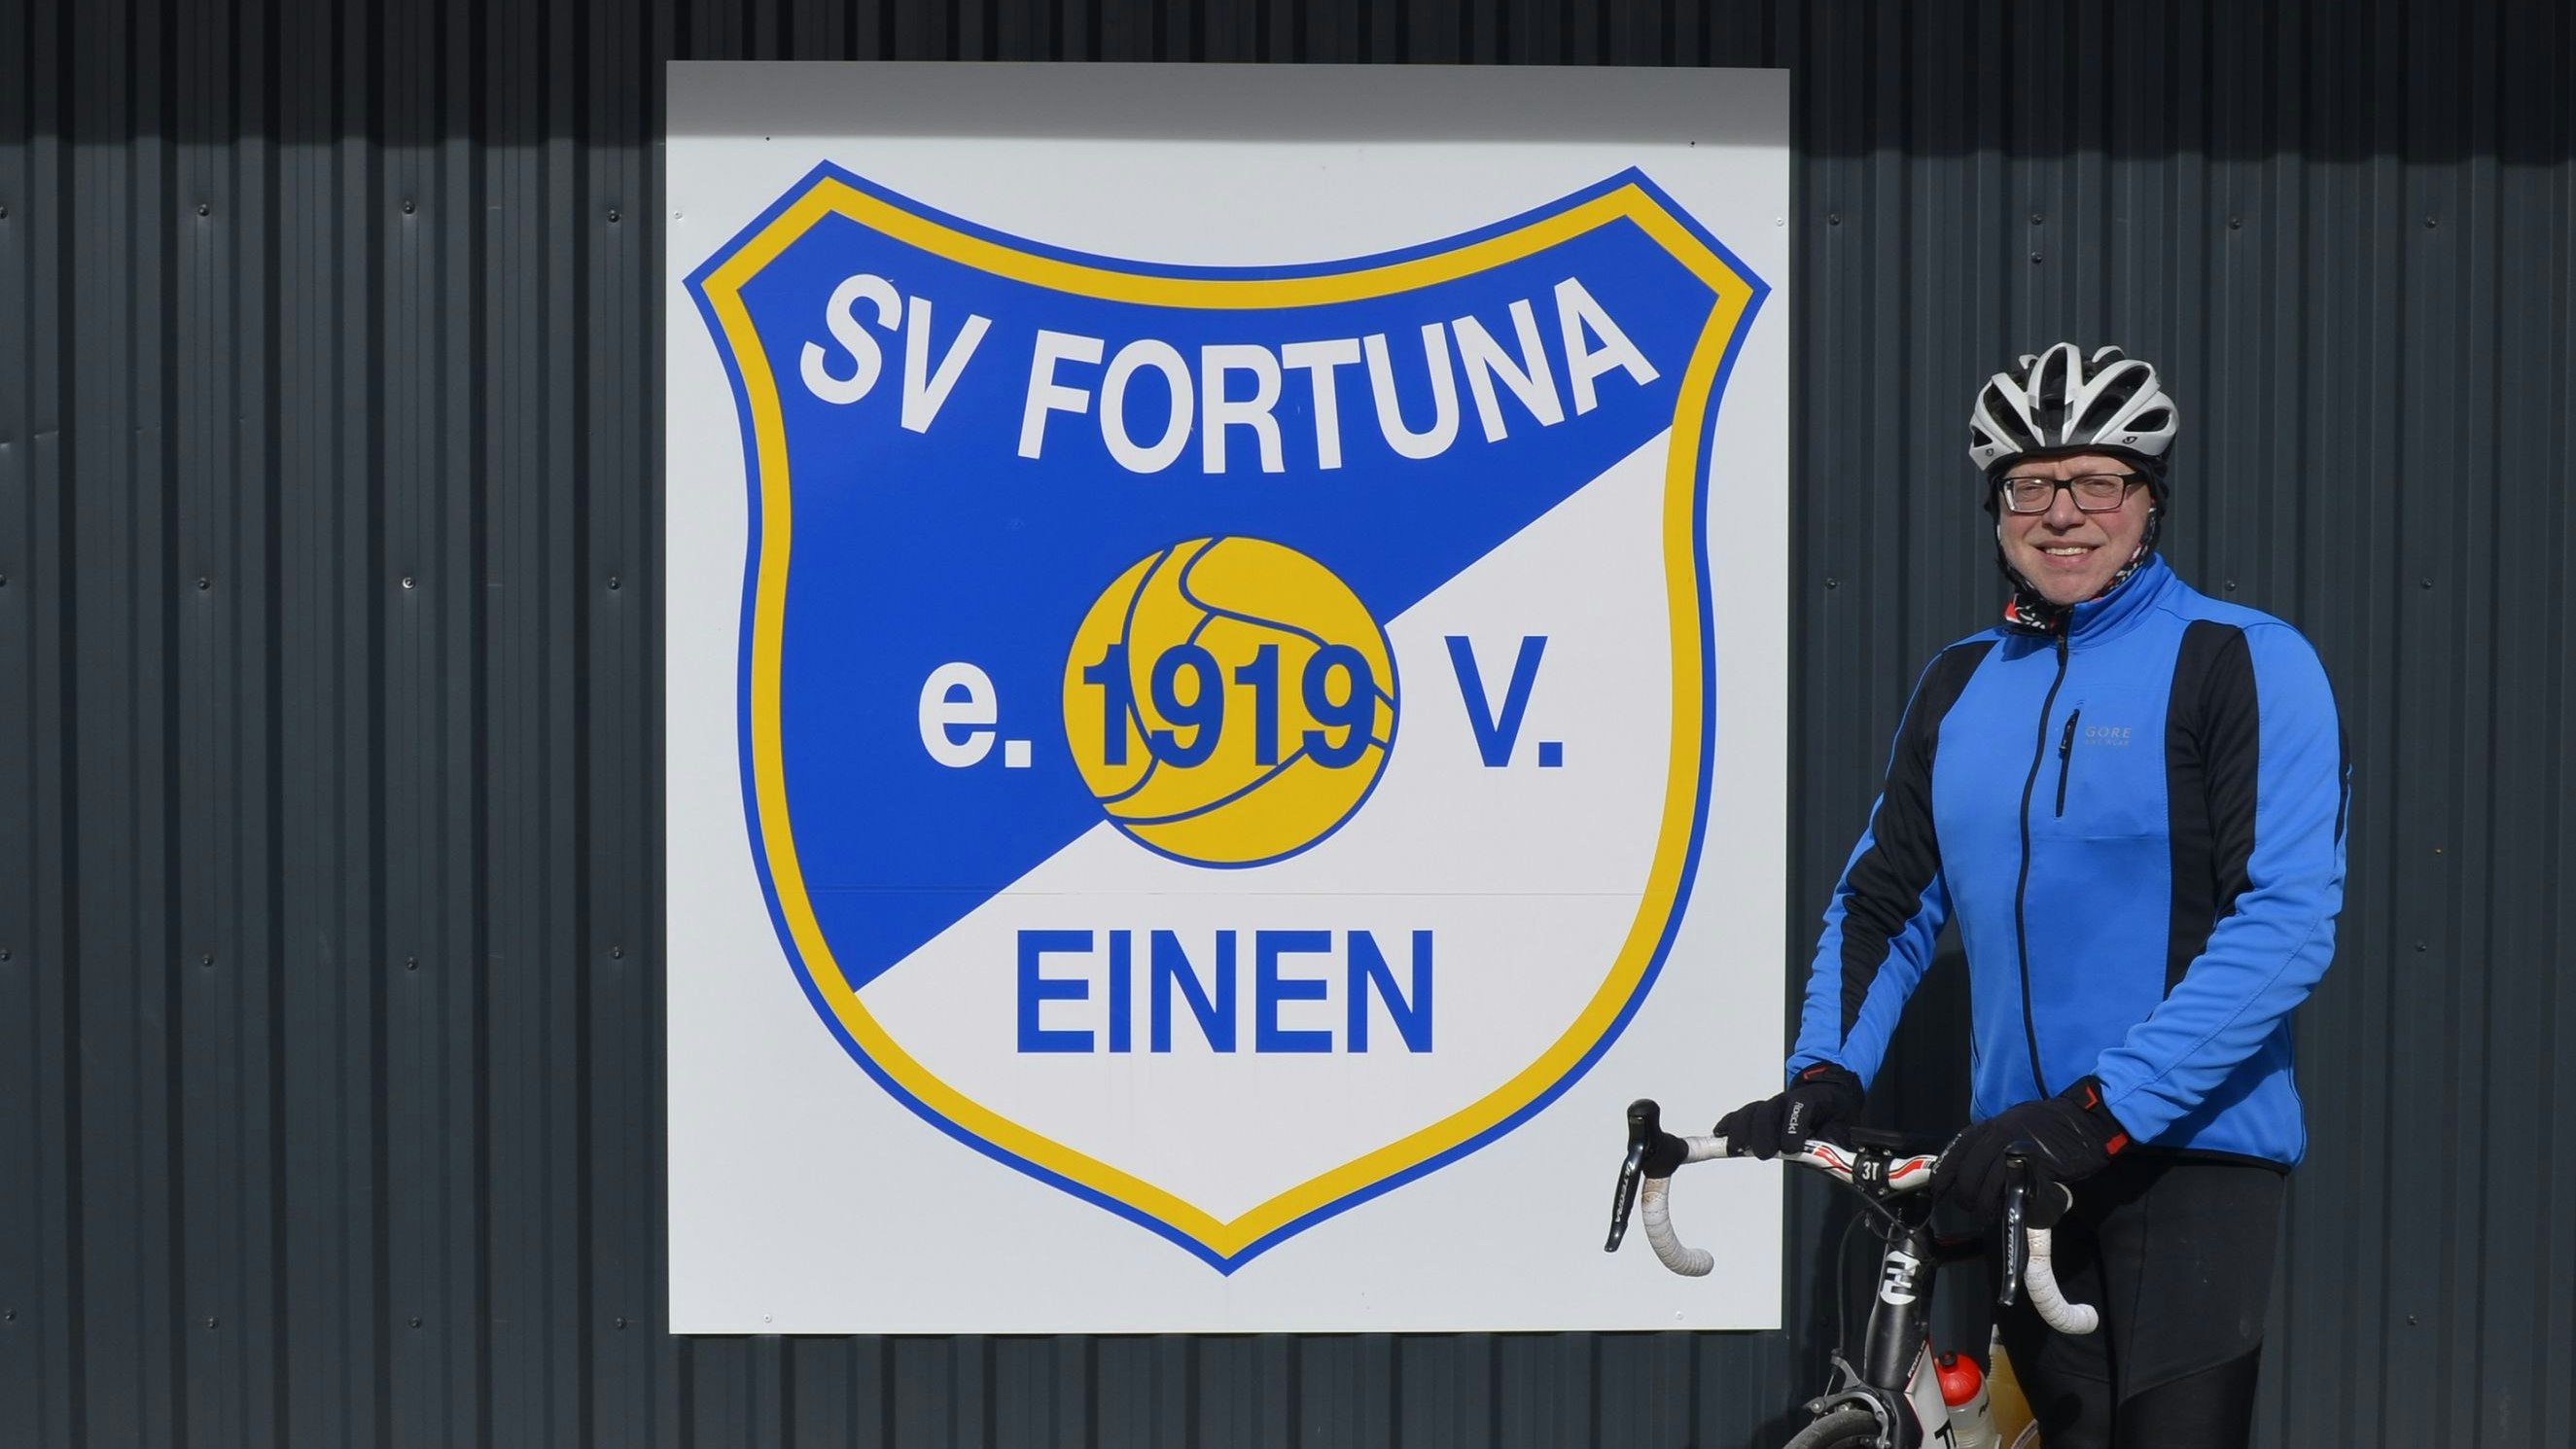 Er strampelte im letzten Jahr 140 Kilometer: Josef Rehe reiste aus Neuenkirchen-Vörden an. Foto: Fortuna Einen